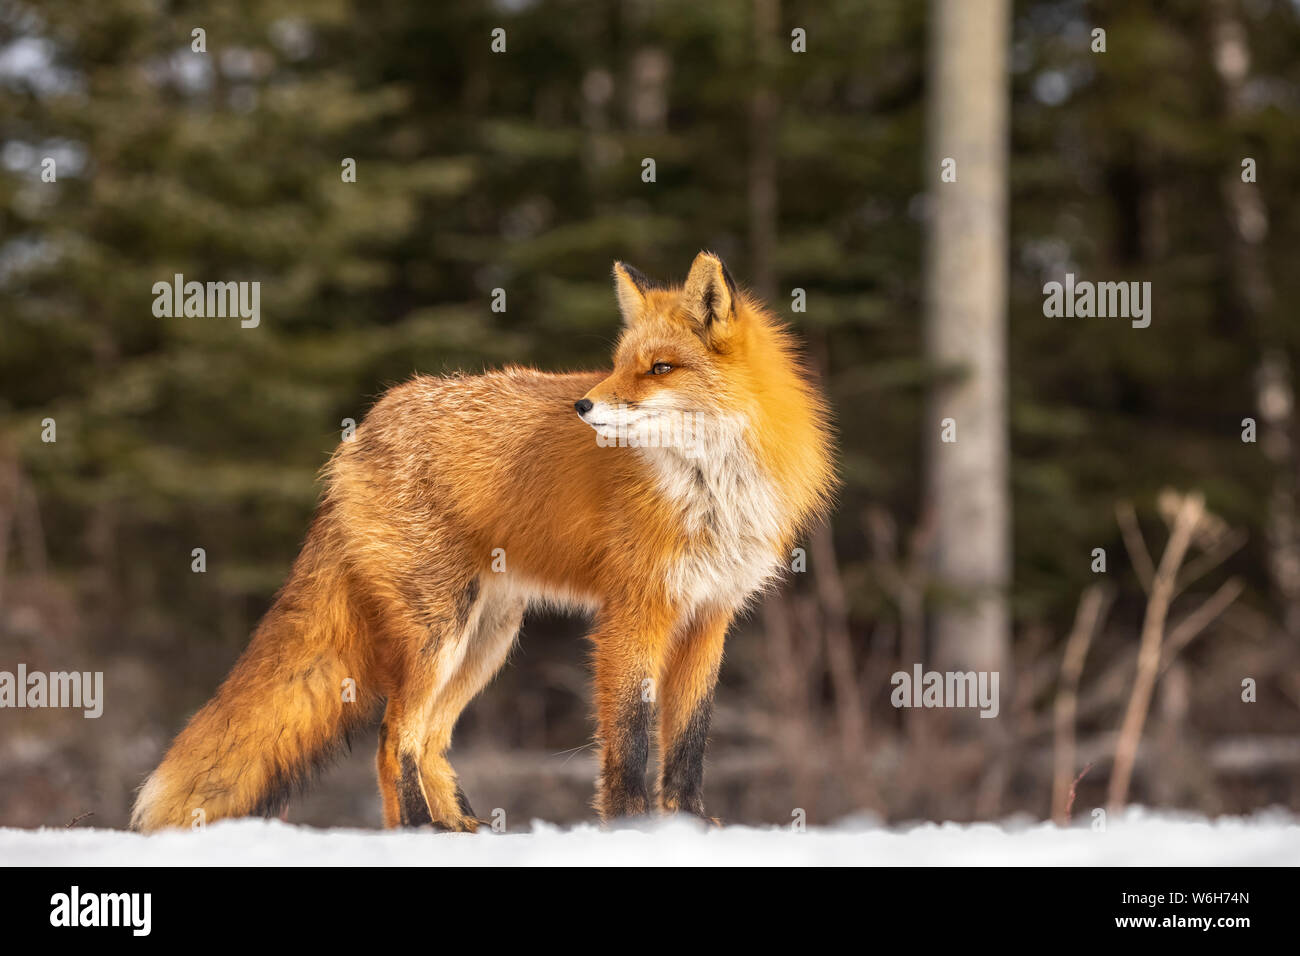 Le renard roux (Vulpes vulpes) debout dans la neige. Famille Fox était souvent vu ici près de Campbell Creek et voyageant sur la piste cyclable de la ville Banque D'Images